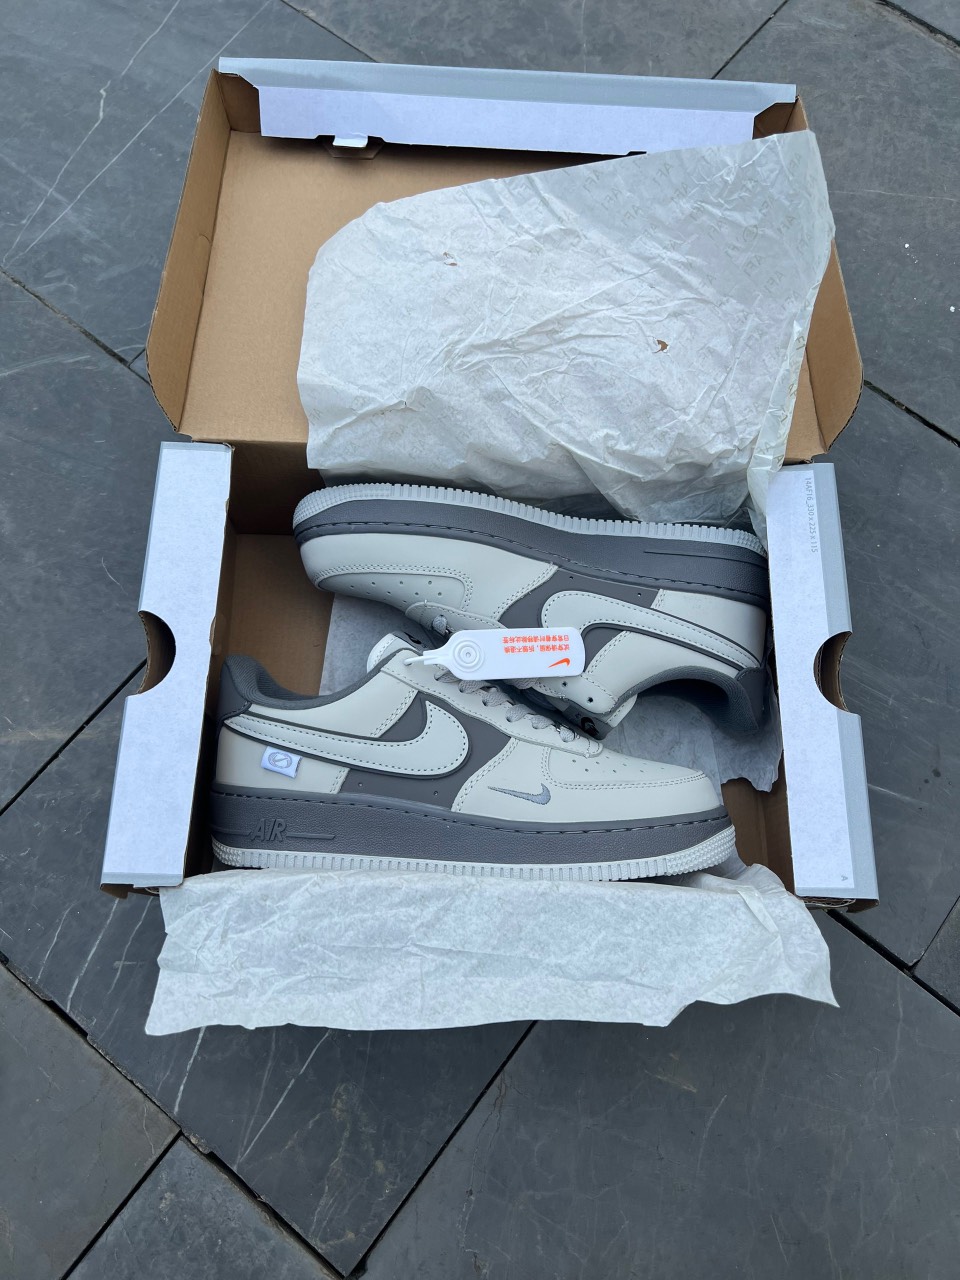 Giày Nike Air Force 1 Low White Grey Siêu Cấp